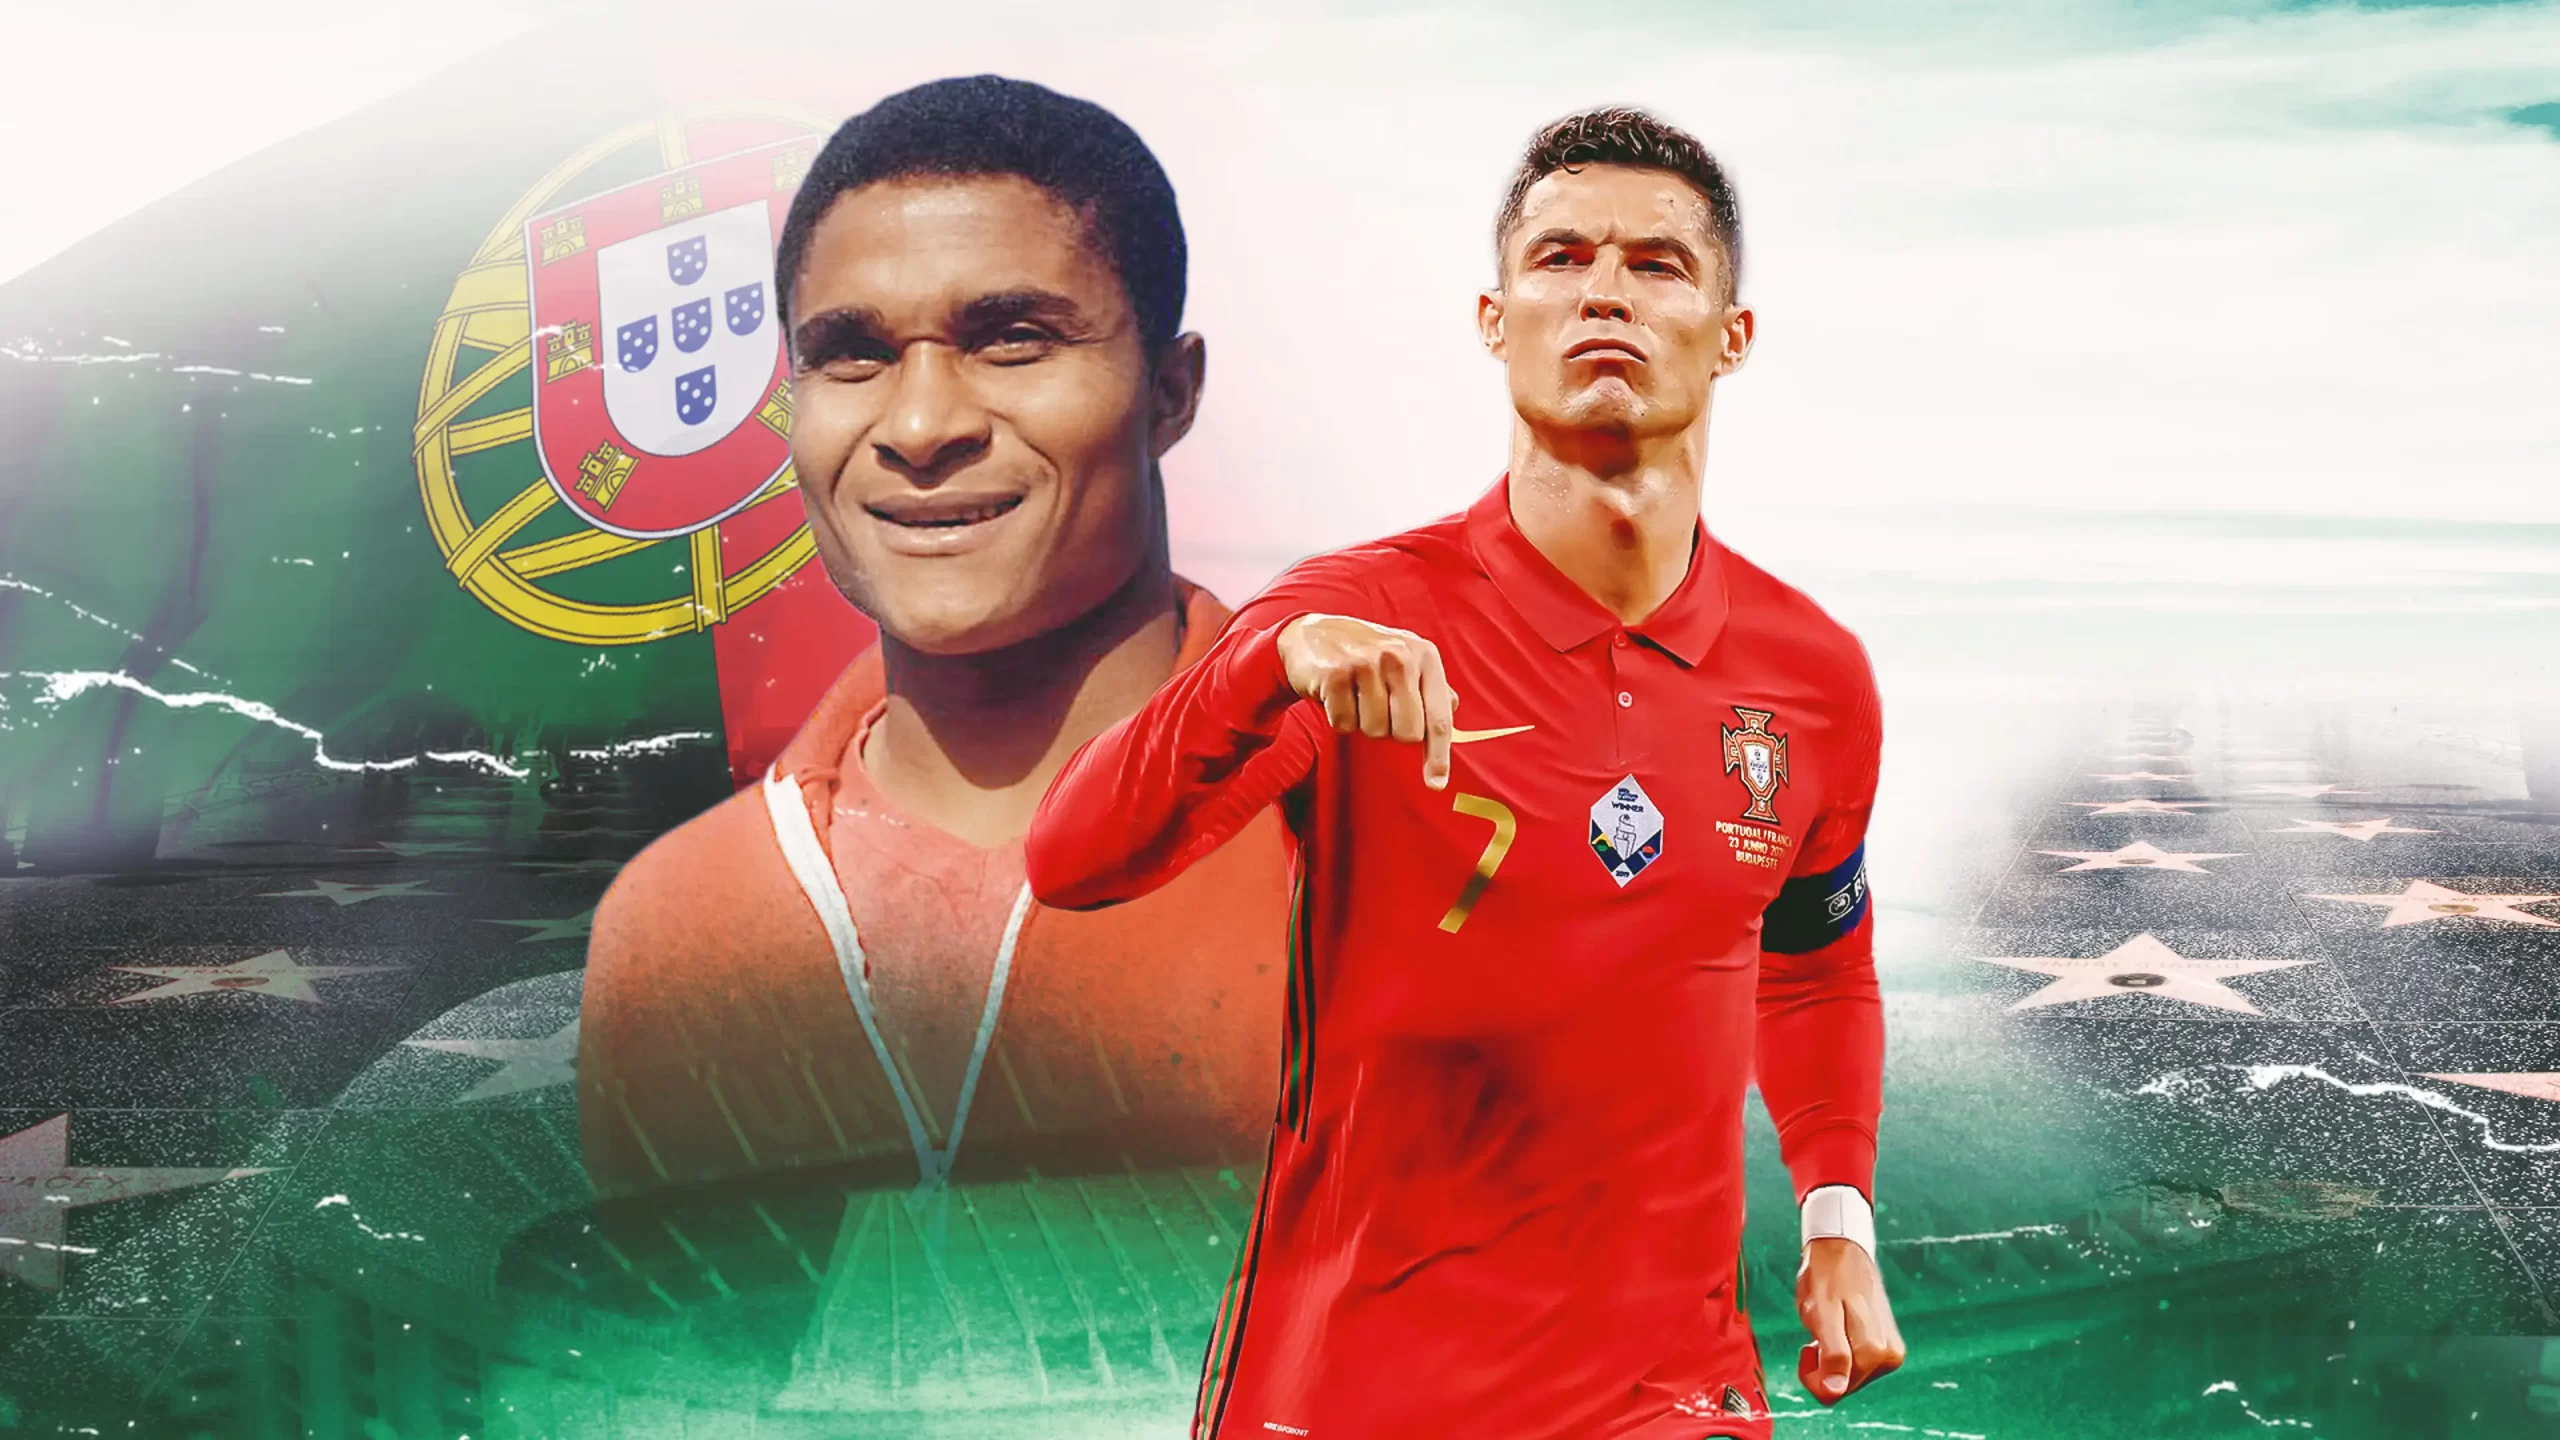 Đội hình các cầu thủ Bồ Đào Nha xuất sắc nhất thế kỷ 21